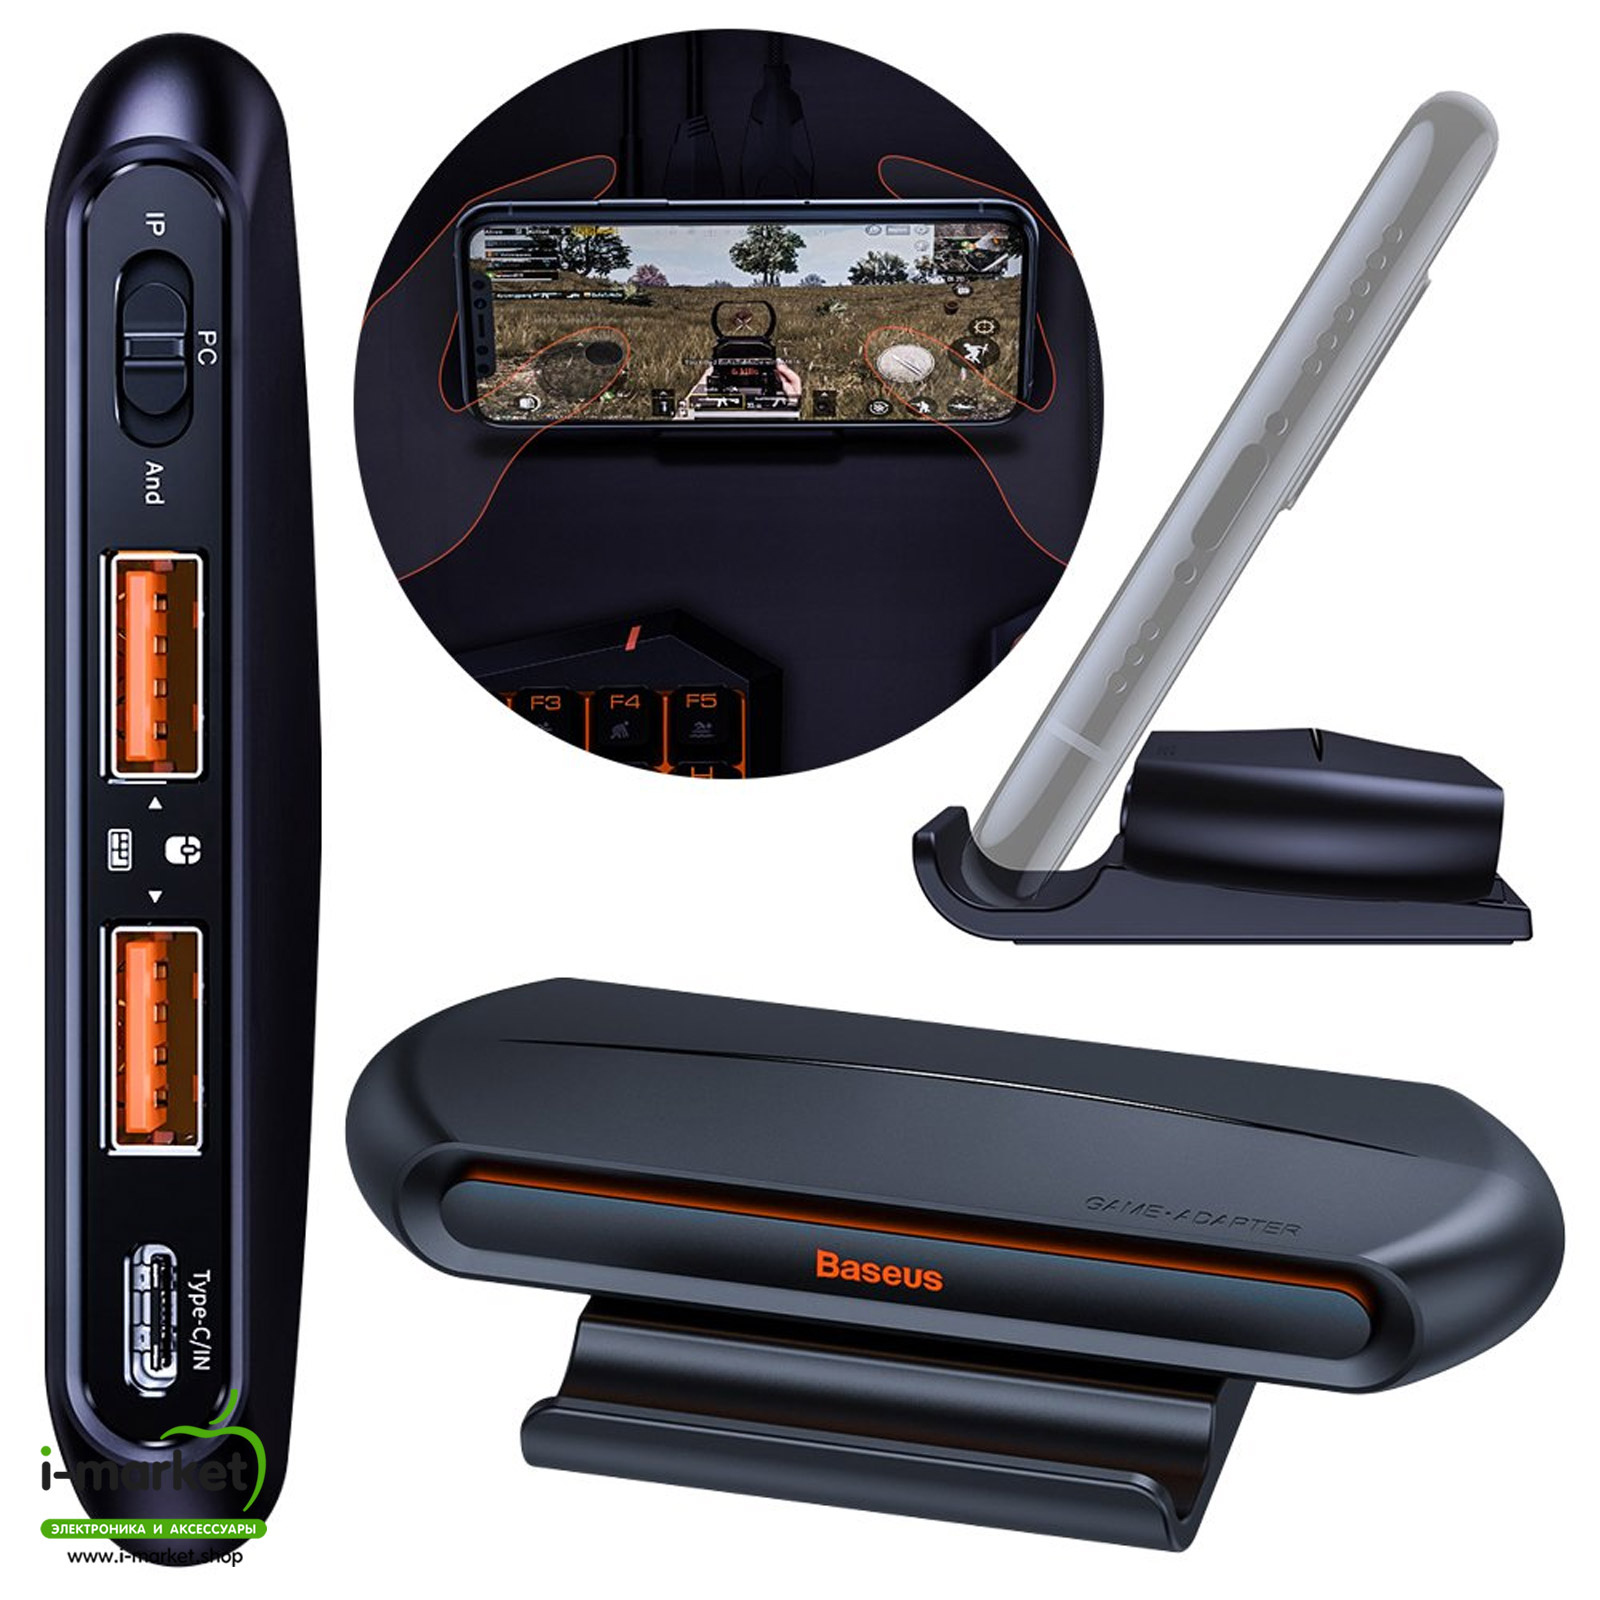 Адаптер для клавиатуры и мыши Baseus Gamo Mobile Game два порта USB, HUB GA01, цвет черный